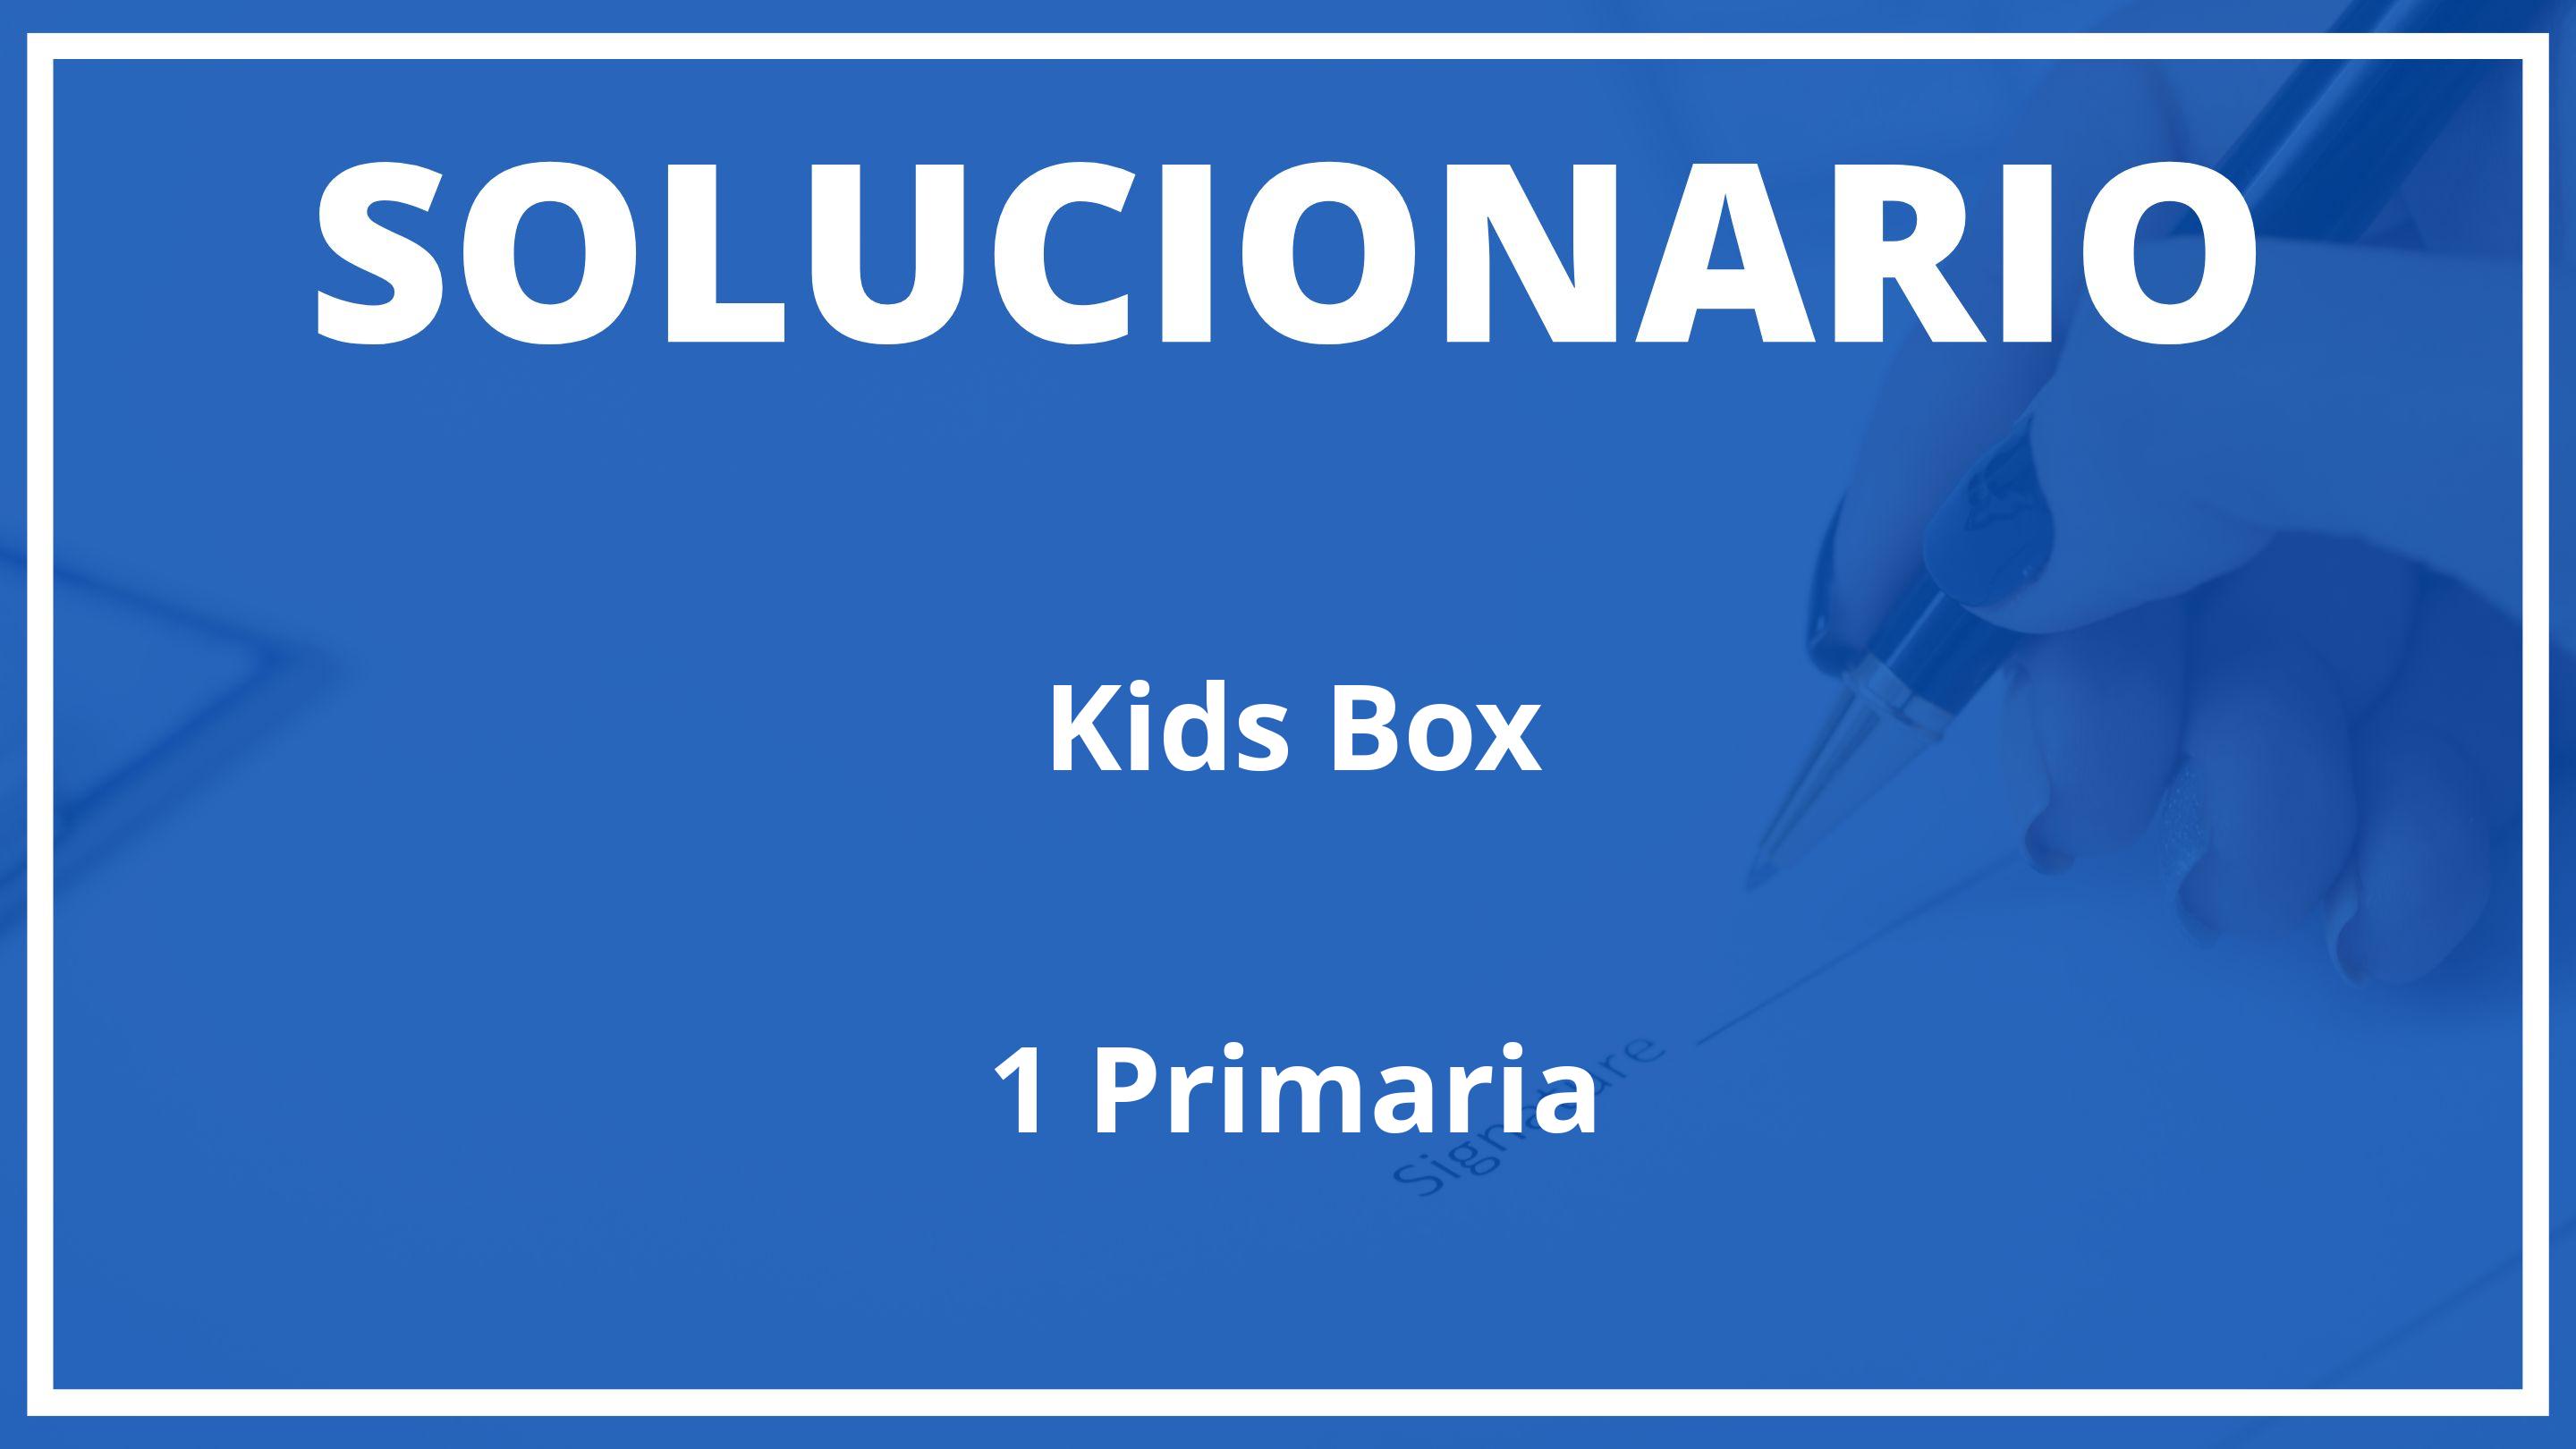 Solucionario Kids Box Cambridge 1 Primaria